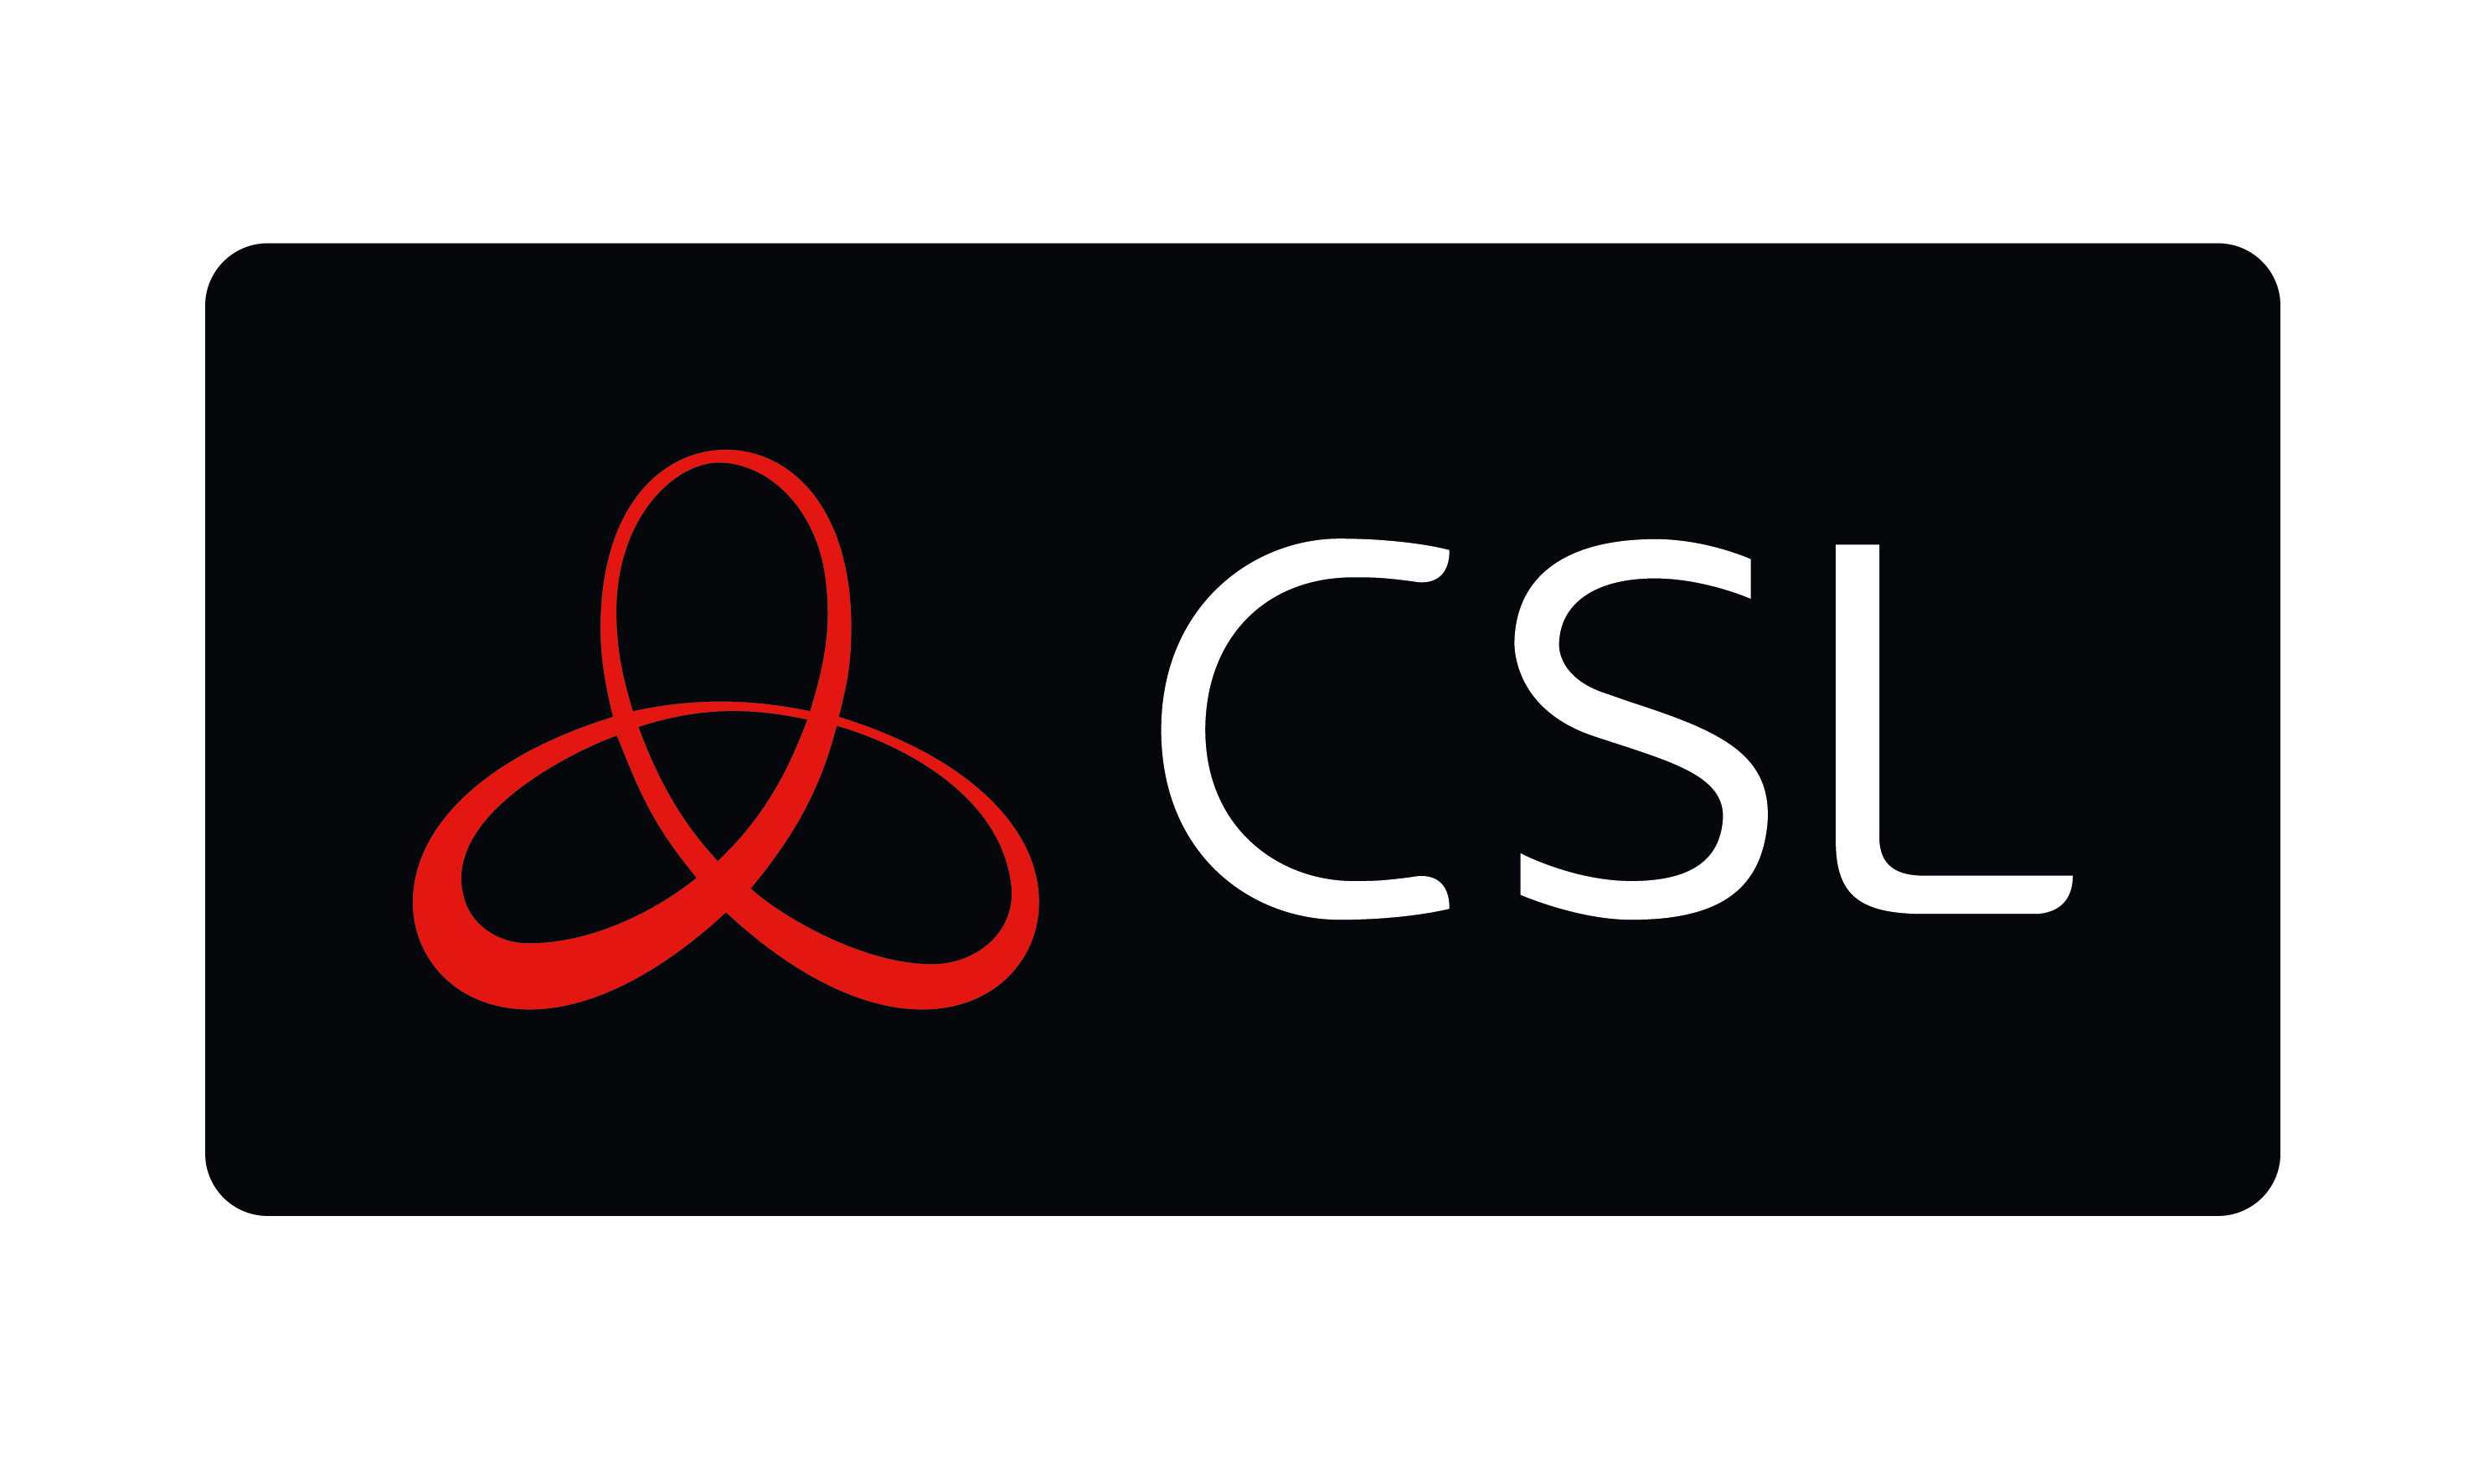 Primary Csl Logo